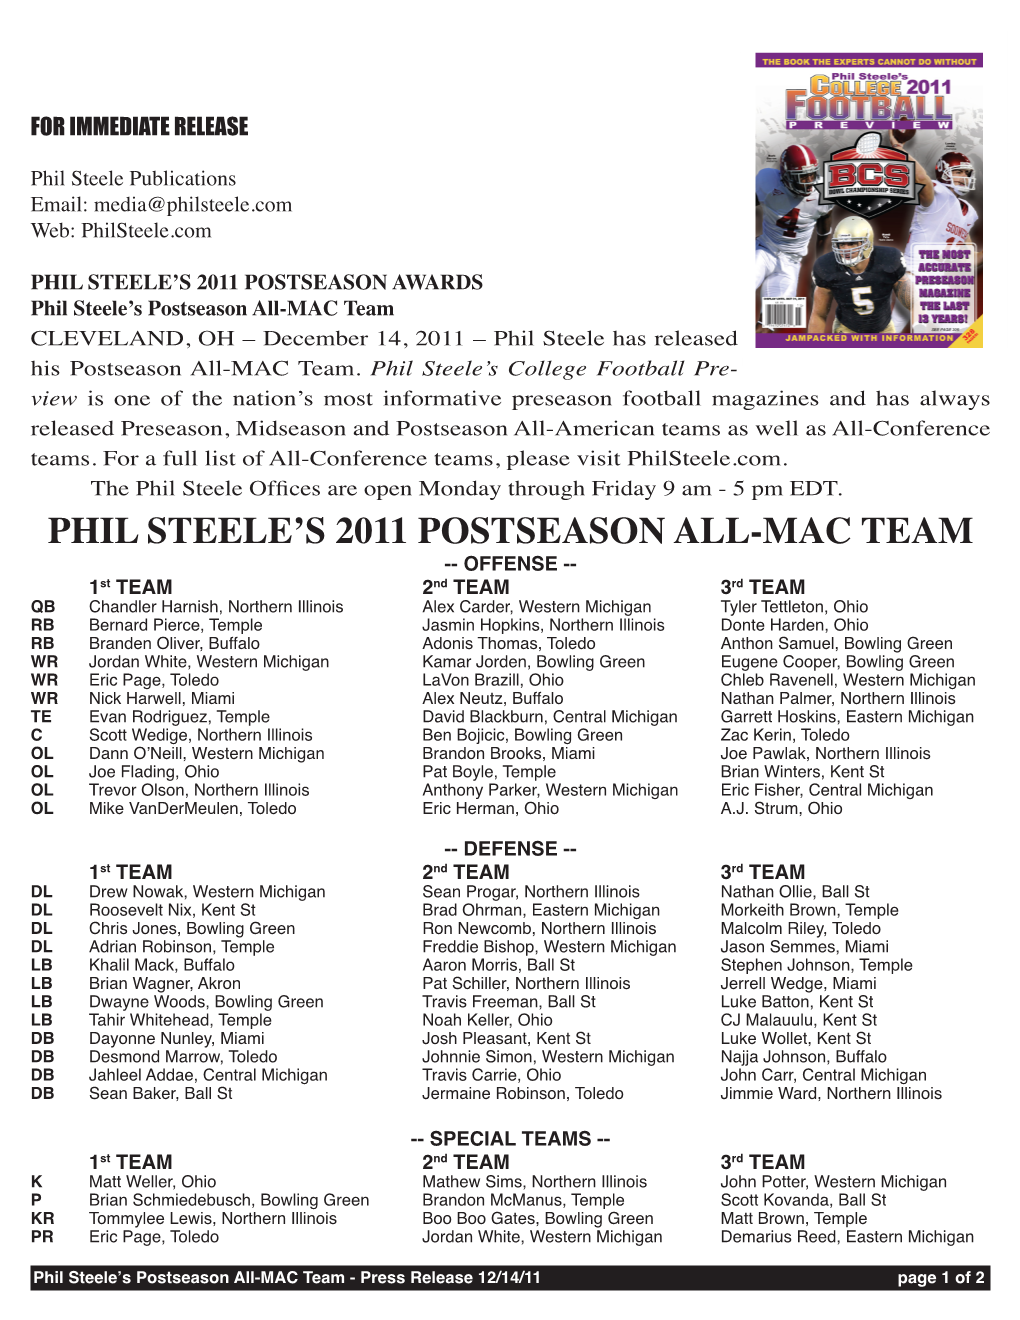 Phil Steele's 2011 Postseason All-Mac Team